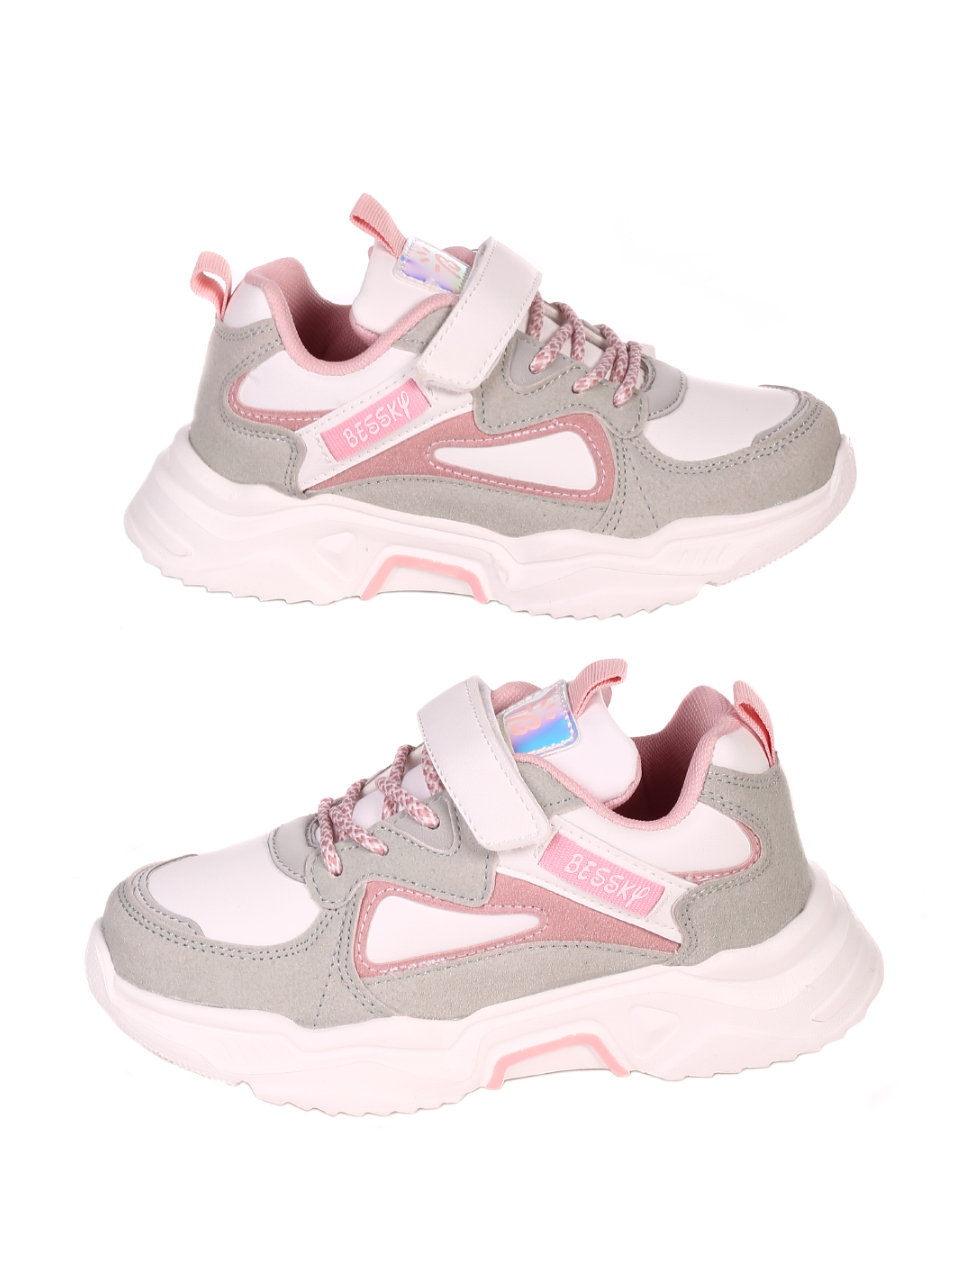 Ежедневни детски обувки в бяло и розово 18P-21082 white/pink